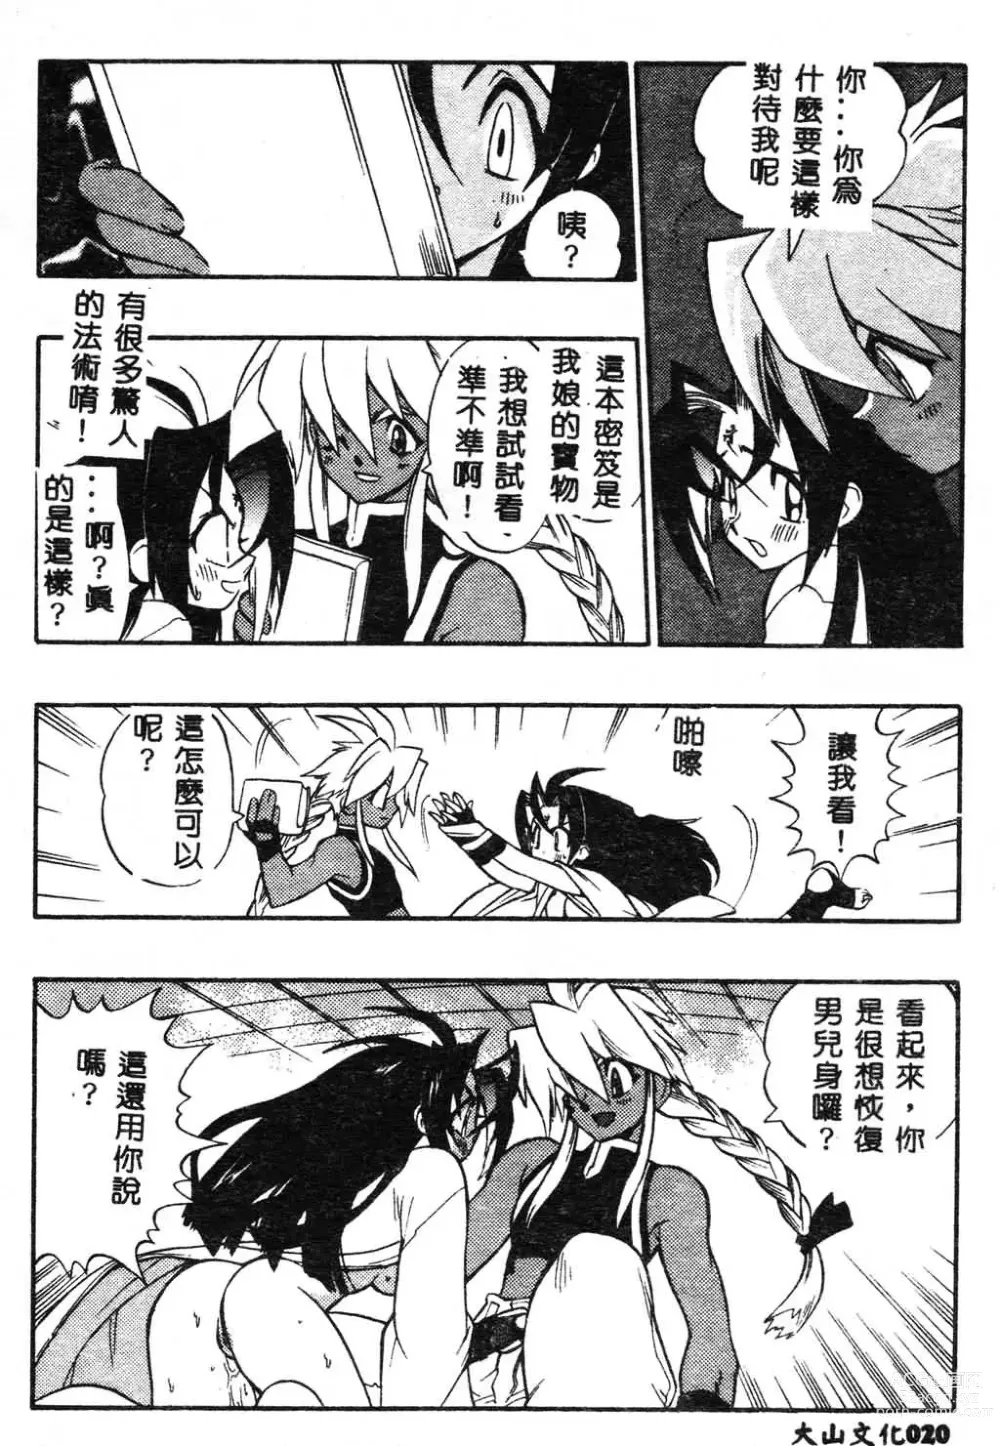 Page 21 of manga Fuusatsu Hyakke